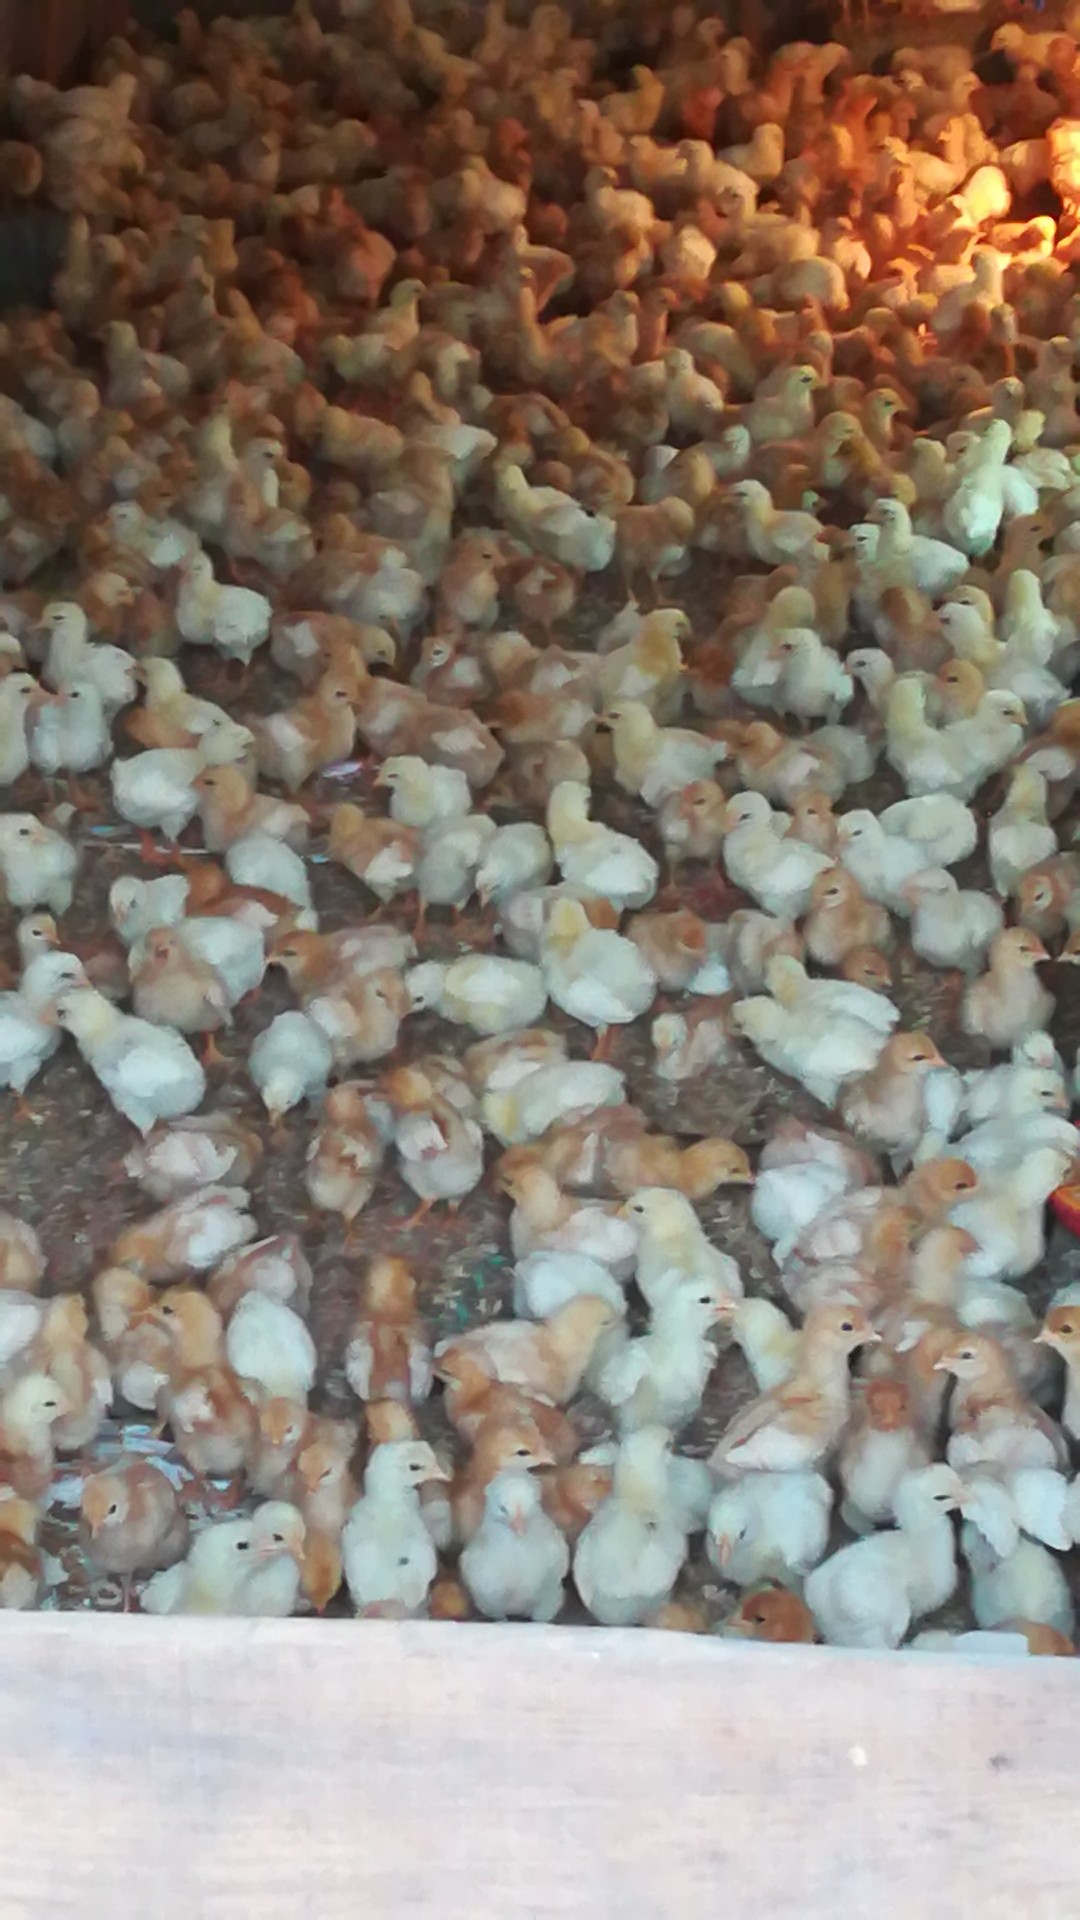 儋州小种鸡图片